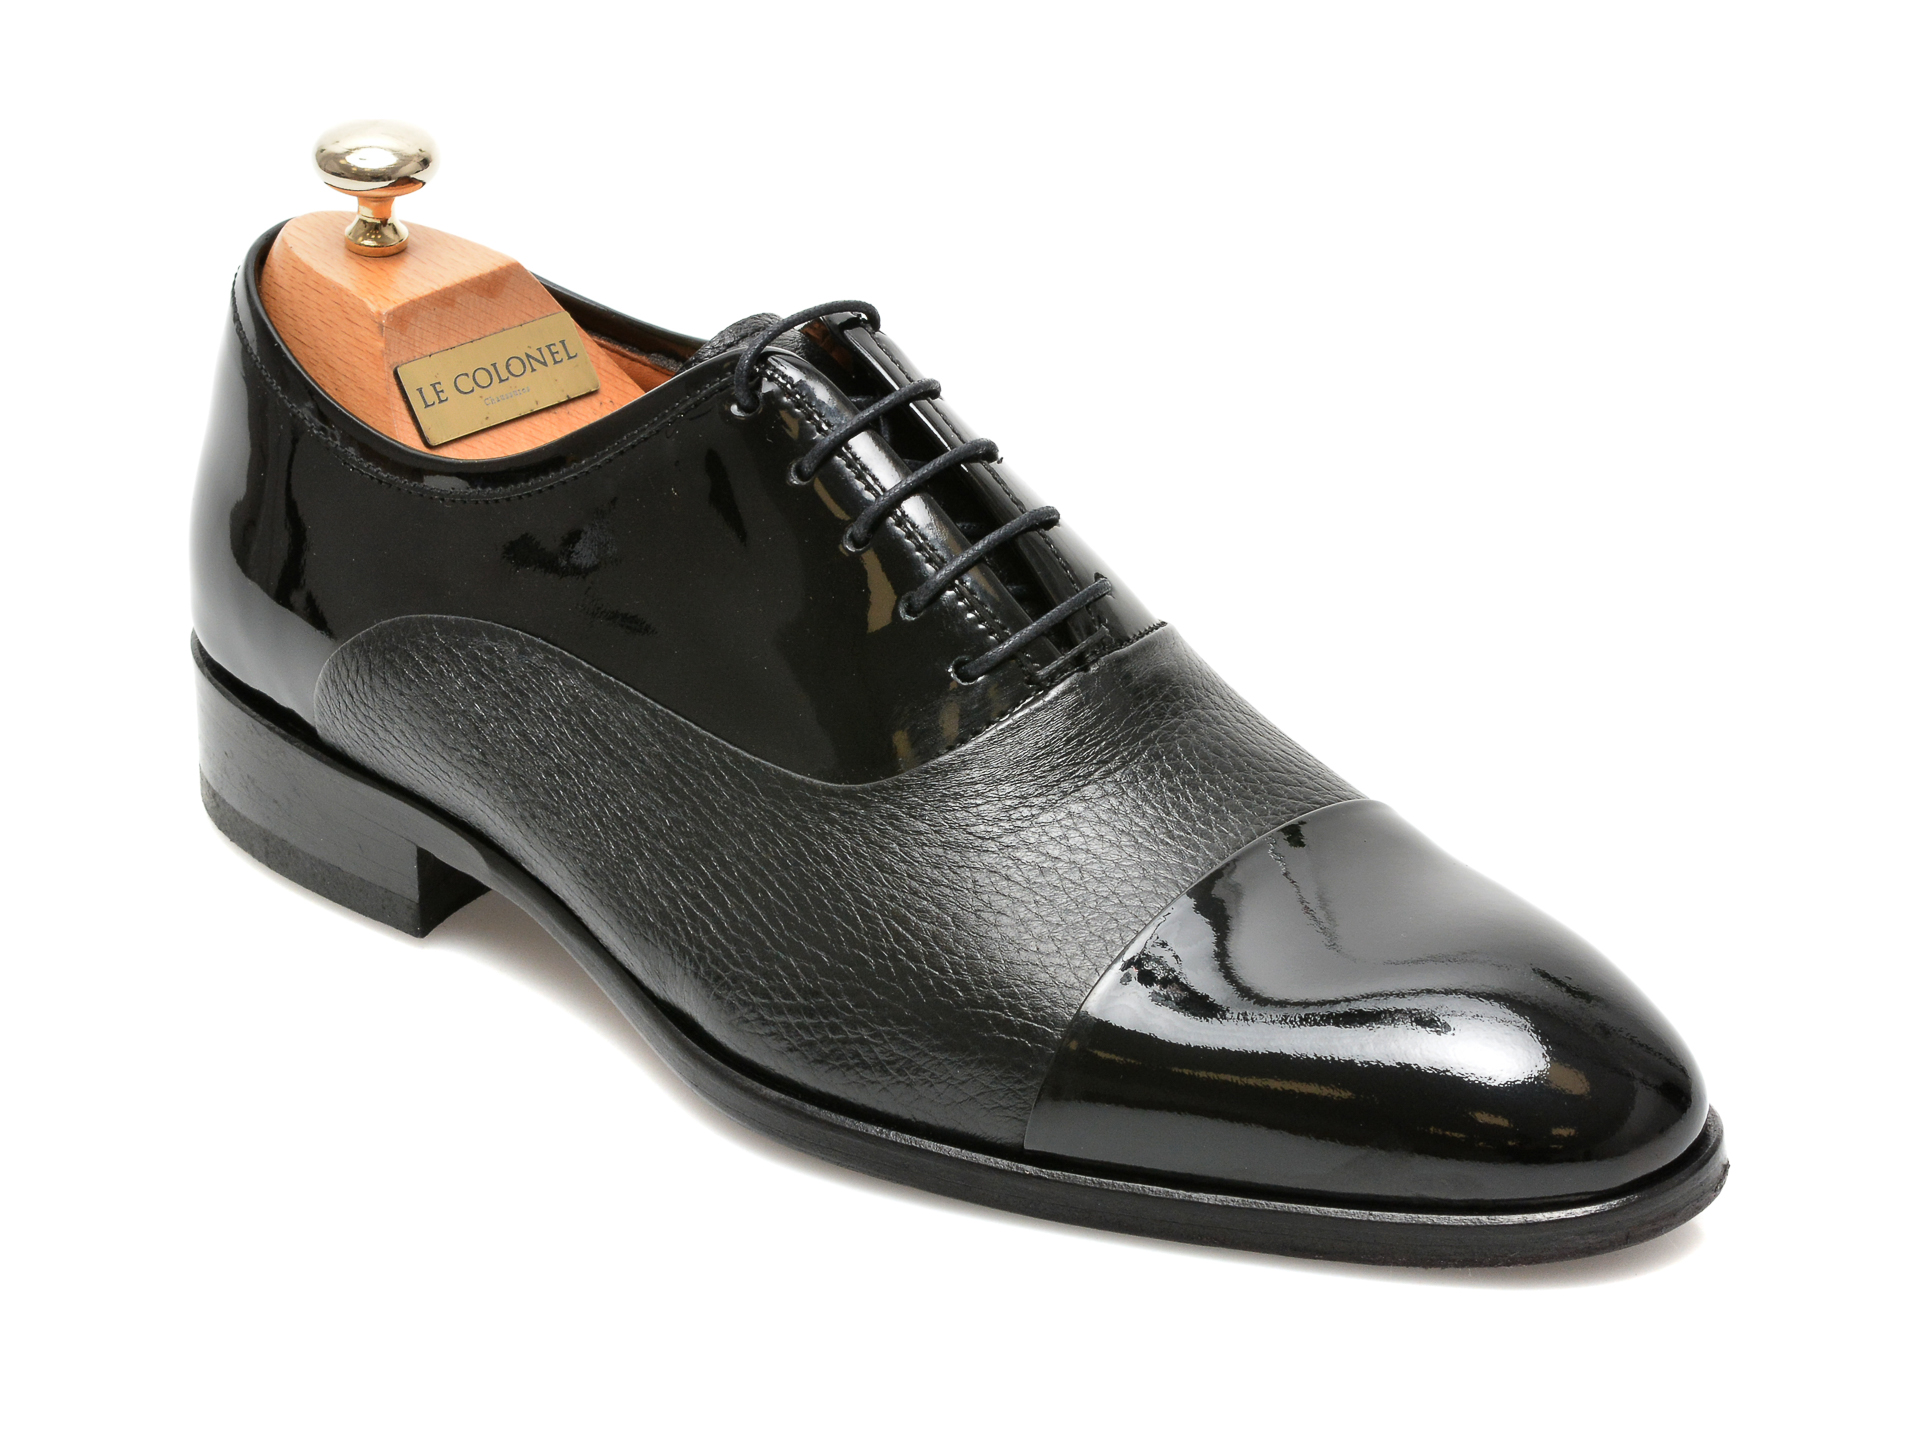 Pantofi LE COLONEL negri, 327117, din piele naturala lacuita Le Colonel imagine noua